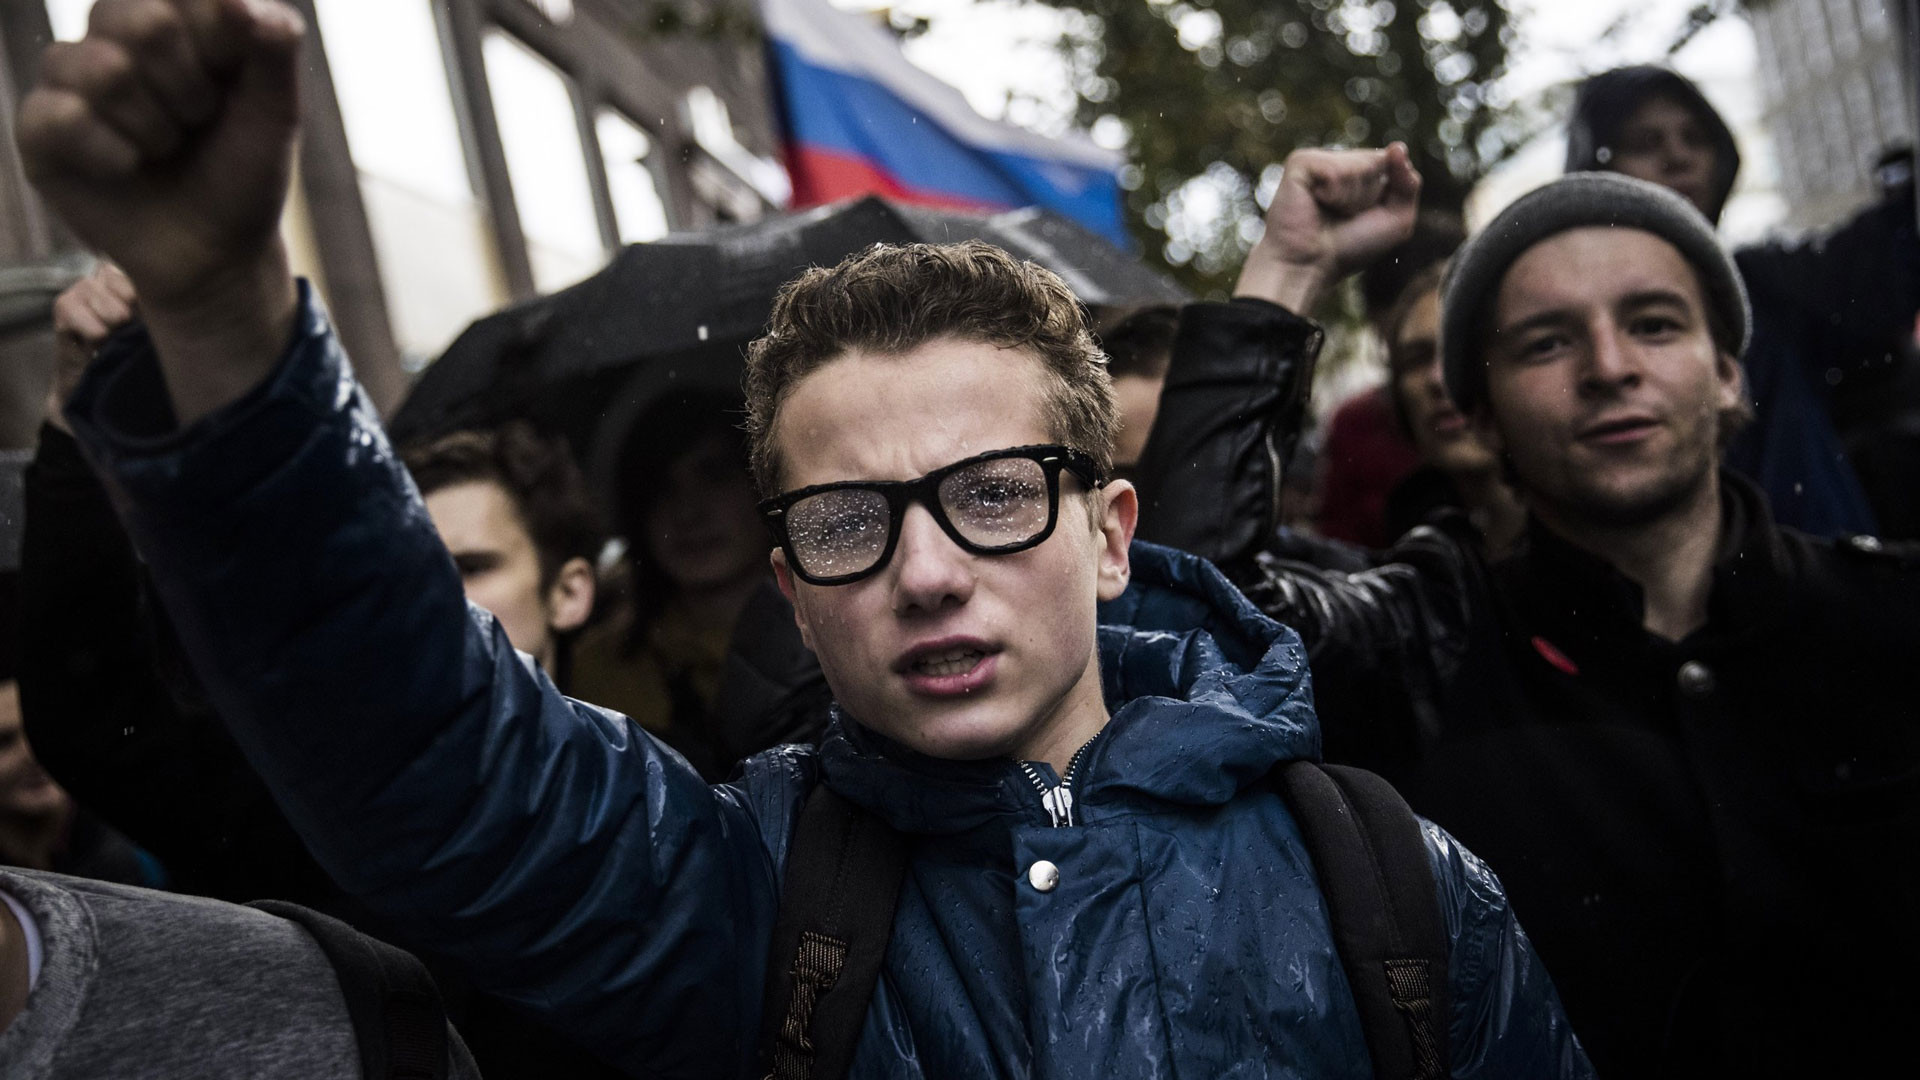 Фото © Евгений Фельдман для проекта "Это Навальный“
